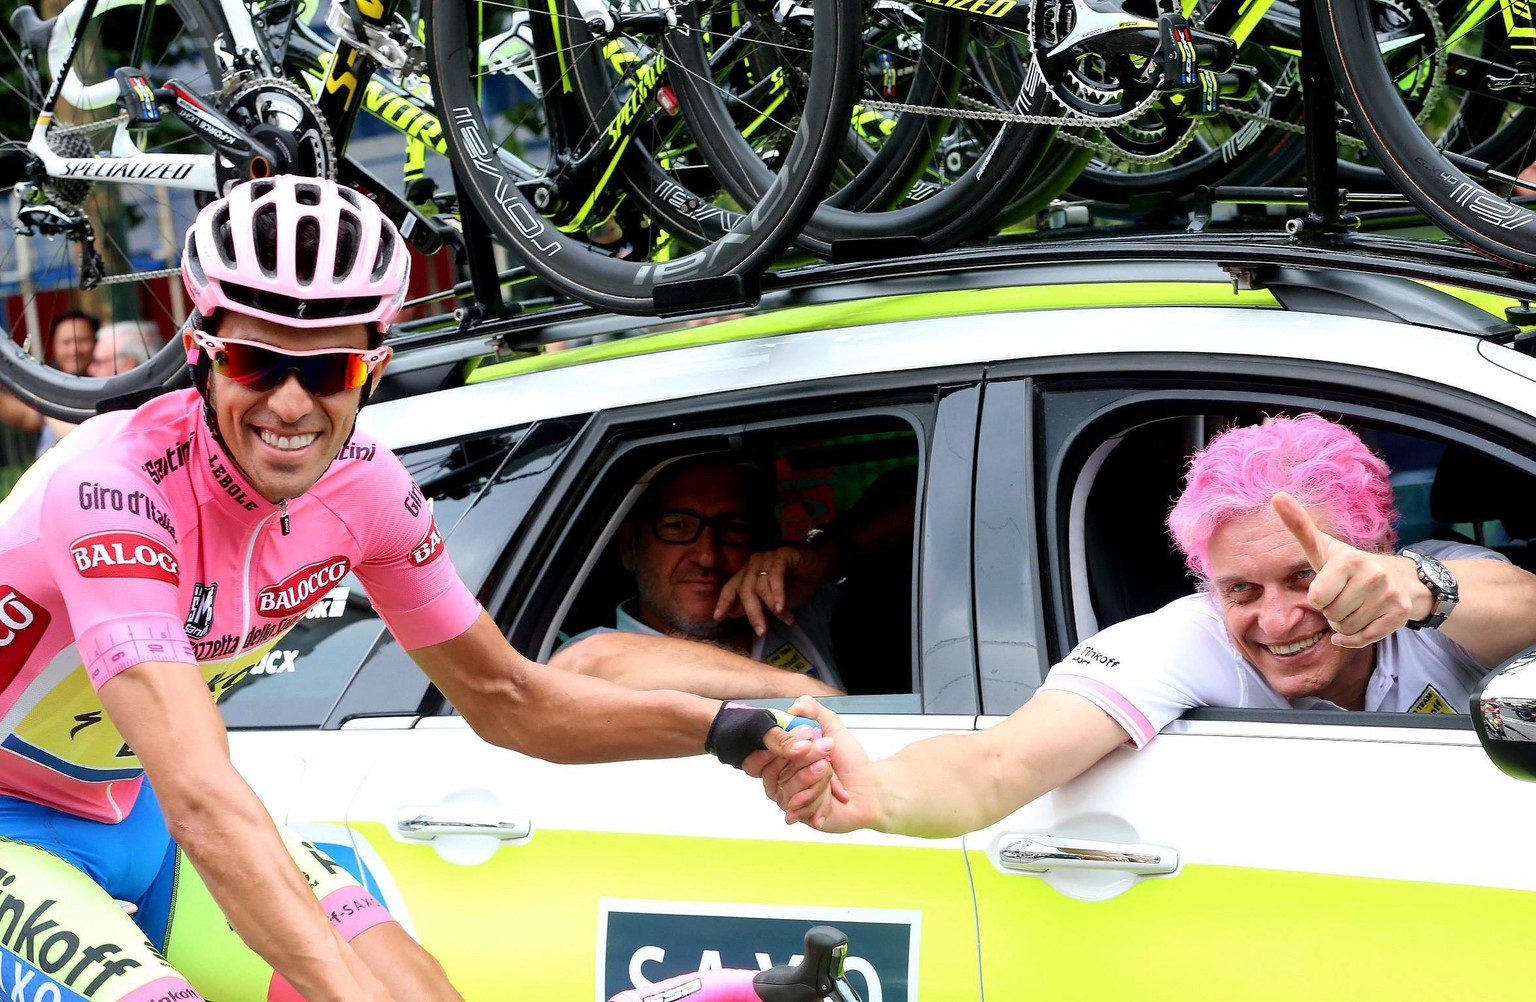 Lockere Stimmung auf der Schlussetappe: Alberto Contador gewinnt den Giro d'Italia.